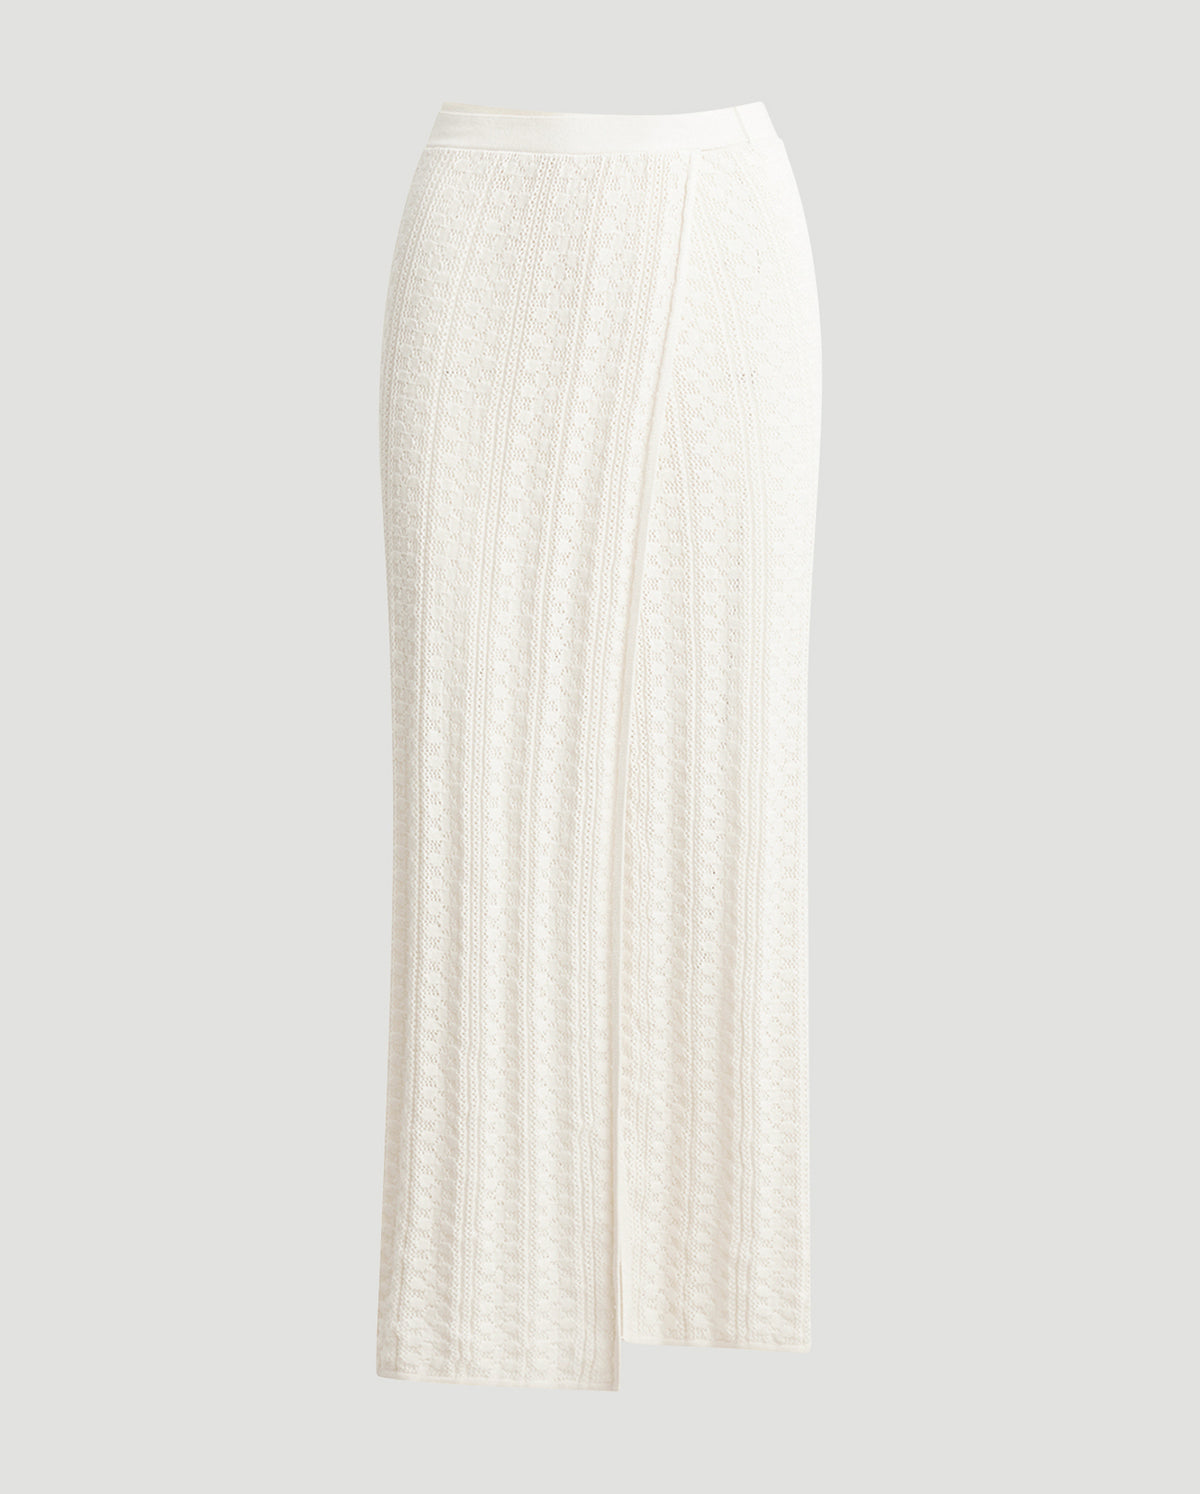 Kelp Crochet Knit Skirt